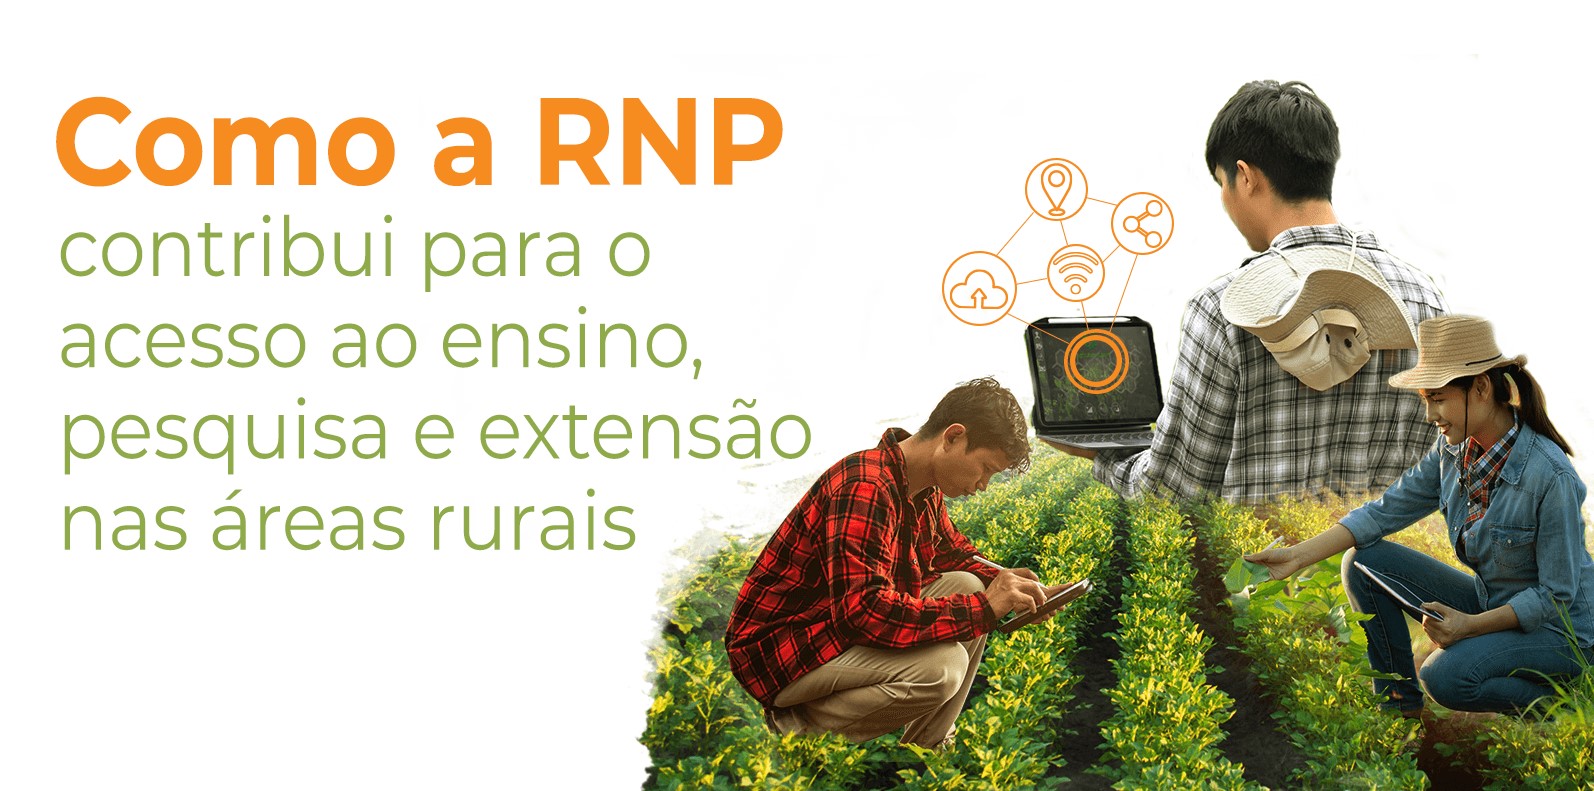 Como a RNP contribui para o acesso ao ensino, pesquisa e extensão nas áreas rurais